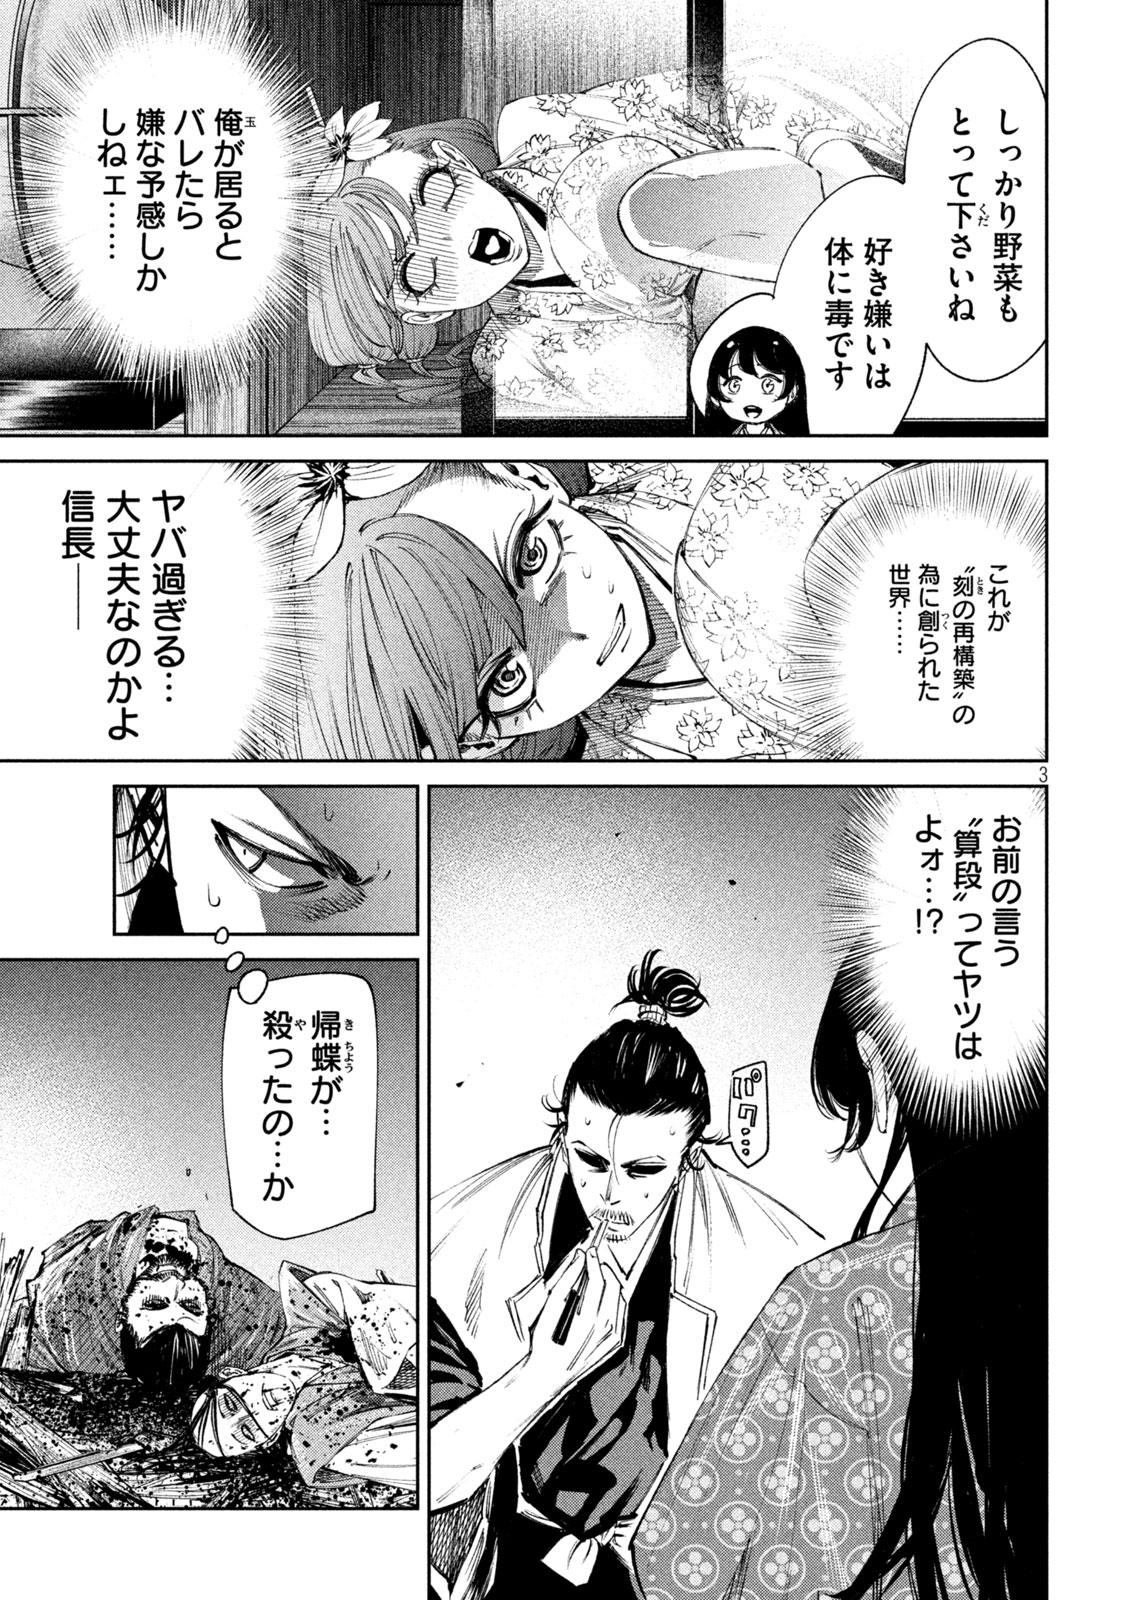 Nando toki o kurikaeshitemo Honnouji ga moerunjaga! - Chapter 124 - Page 3